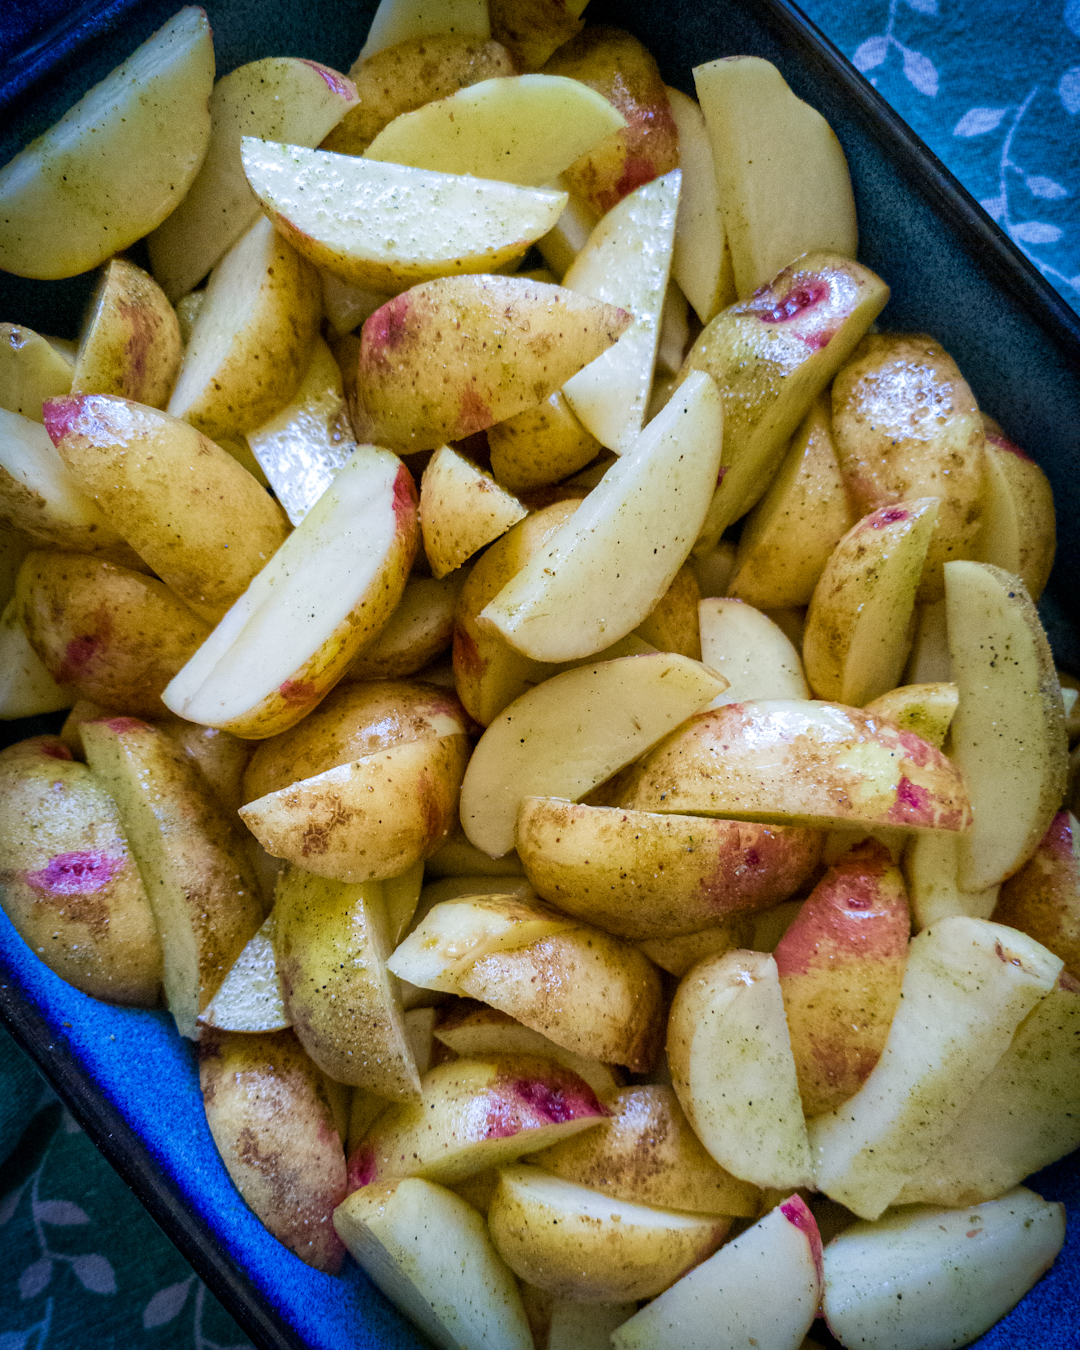 ziemniaki zapiekane, ziemniaki  przygotowane do pieczenia w naczyniu